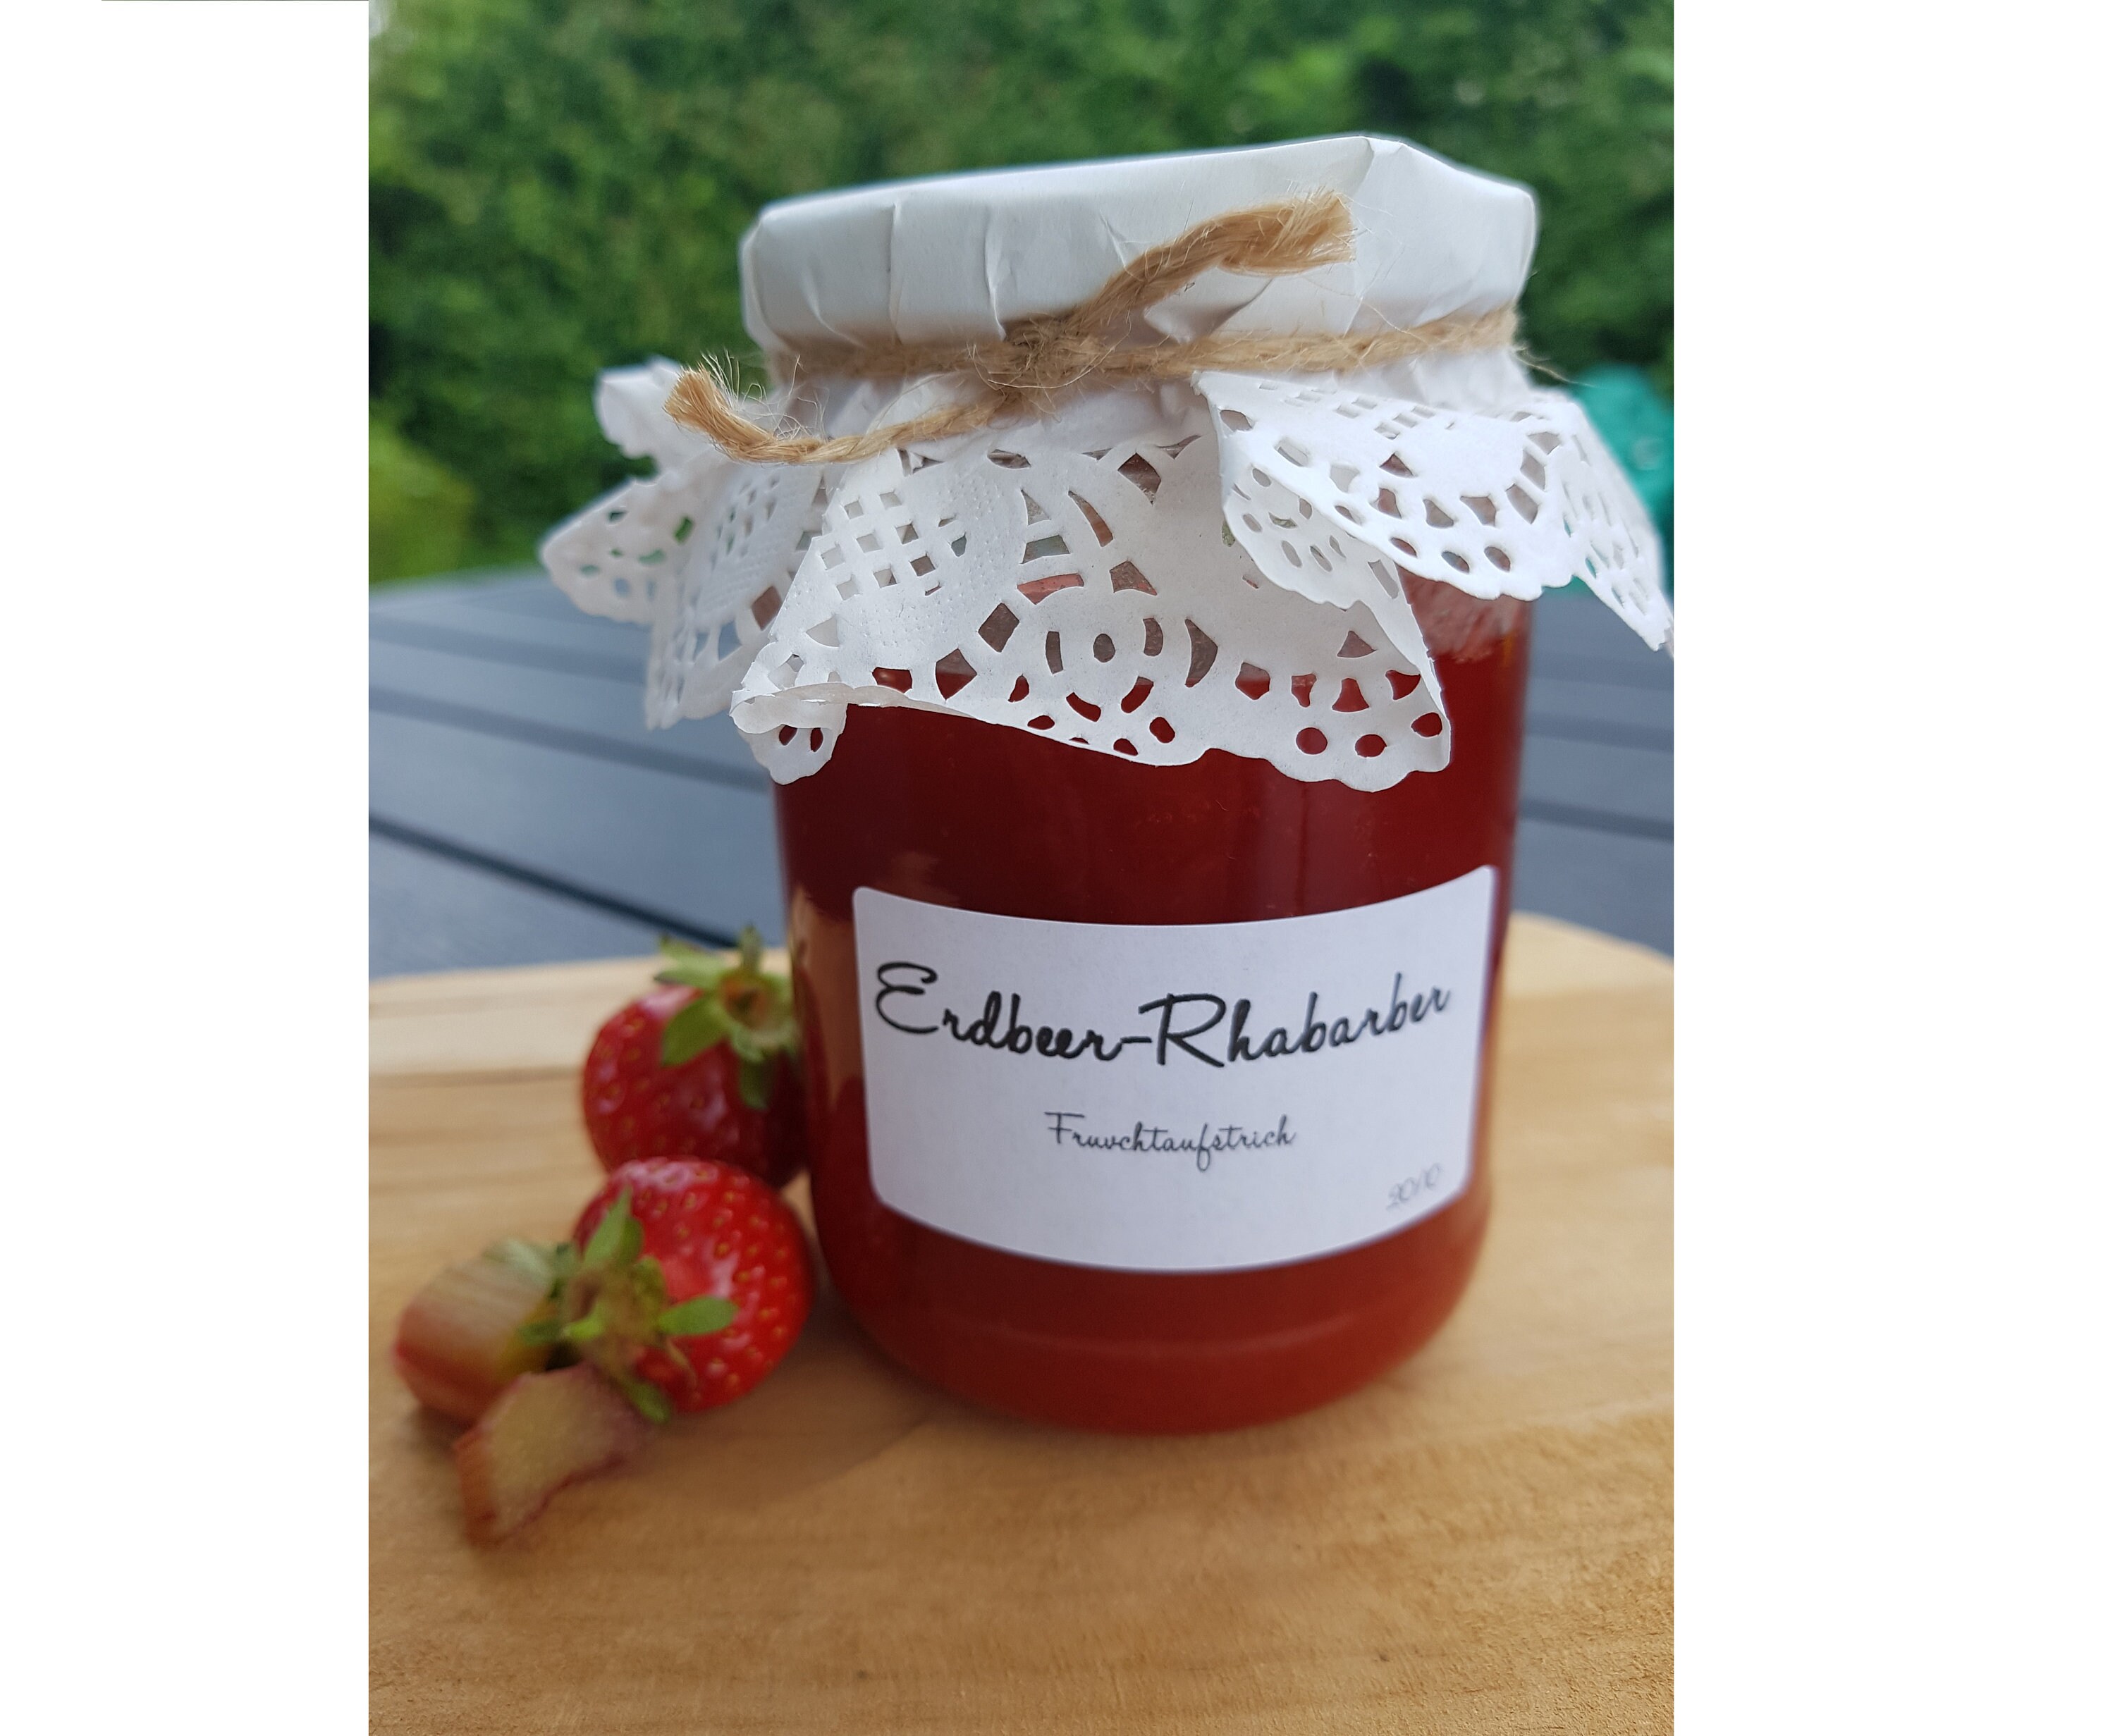 Erdbeer Rharbarber Marmelade Mit Einem Leichten Ha — Rezepte Suchen